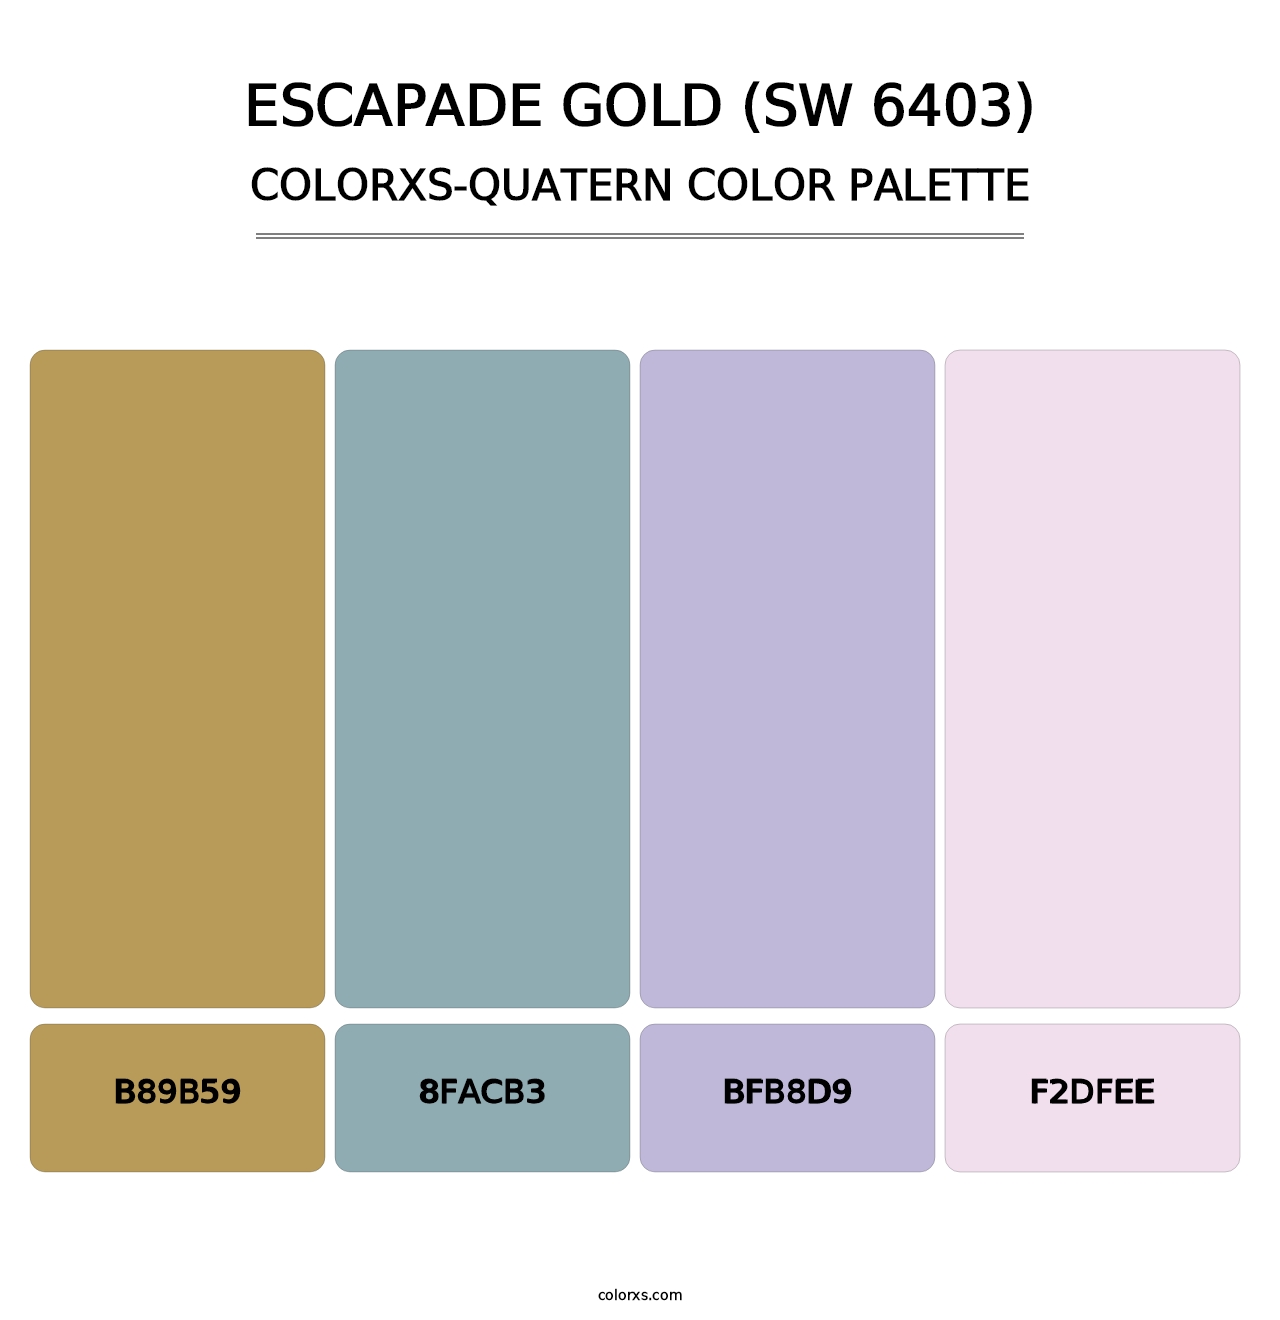 Escapade Gold (SW 6403) - Colorxs Quatern Palette